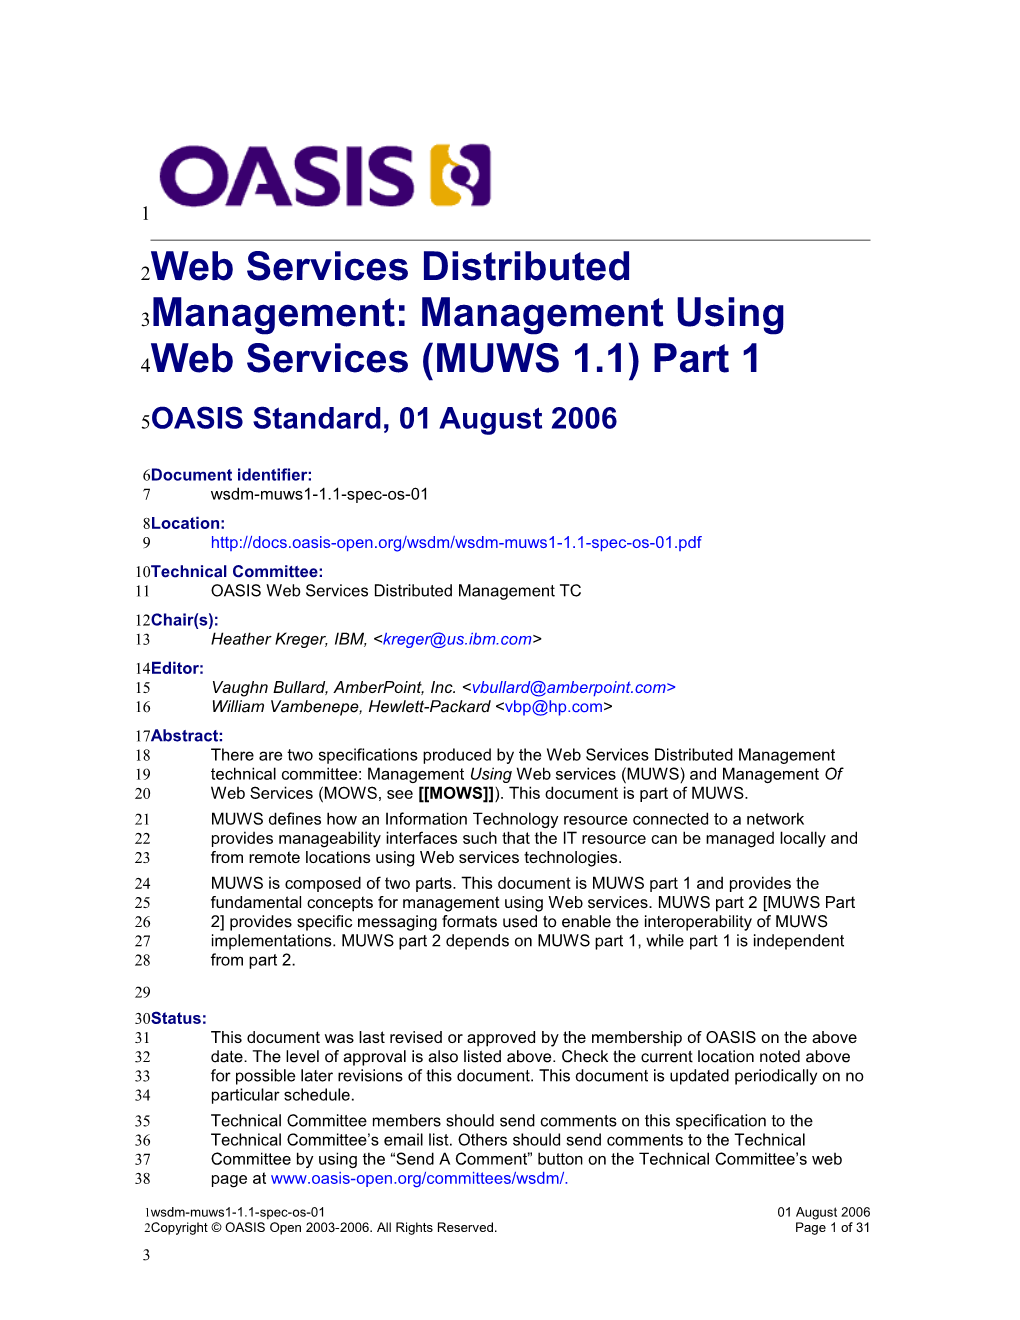 WSDM MUWS 1.0 Part 1